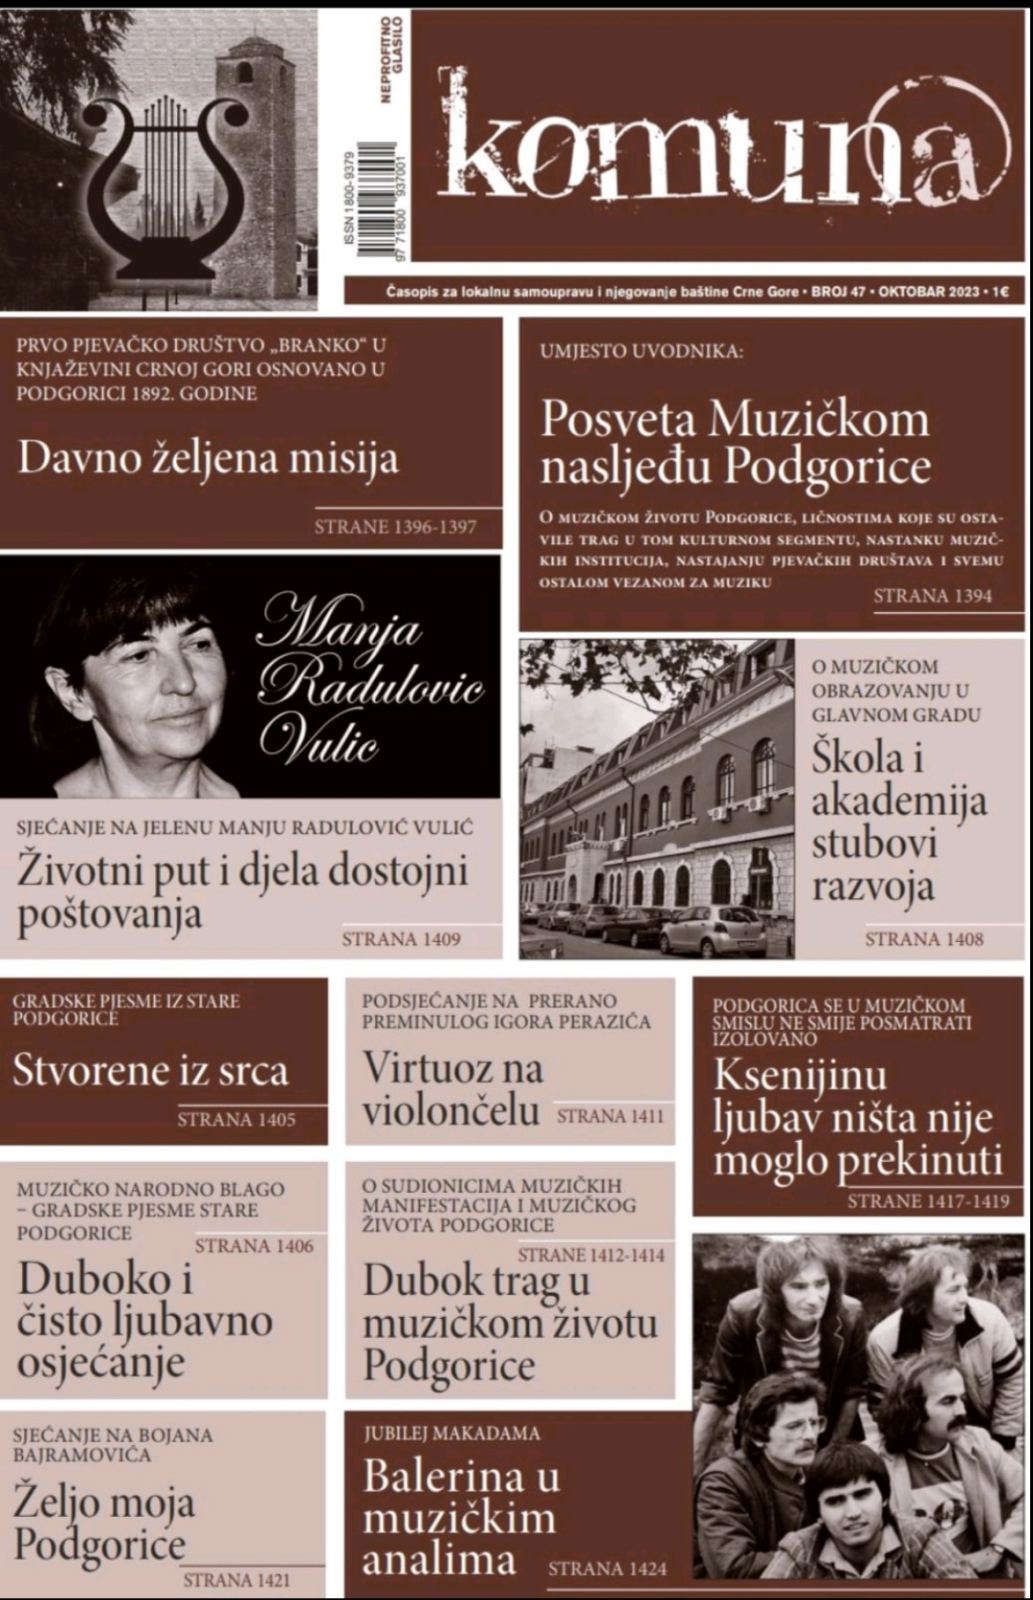 Promocija posebnog tematskog broja časopisa “Komuna” u NB “Radosav Ljumović”